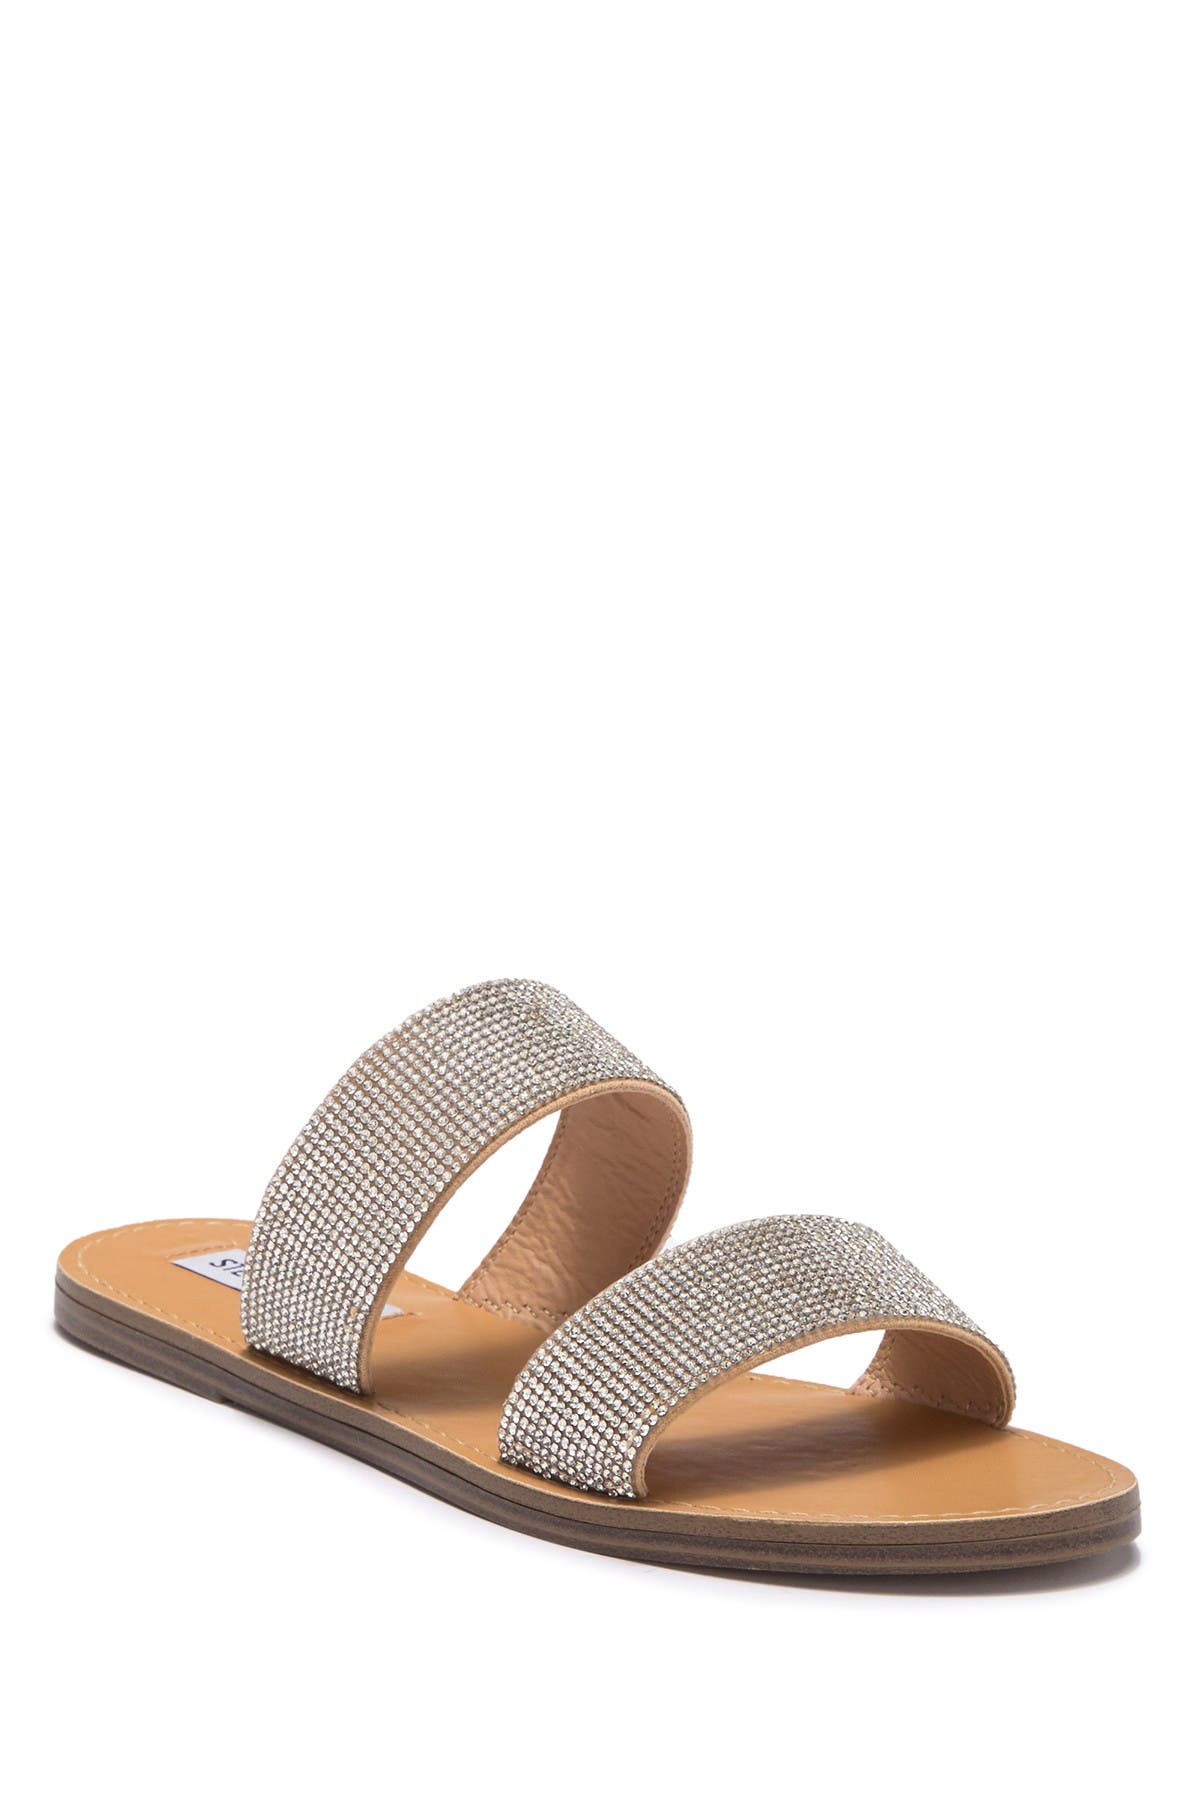 steve madden ronan embellished slide sandal